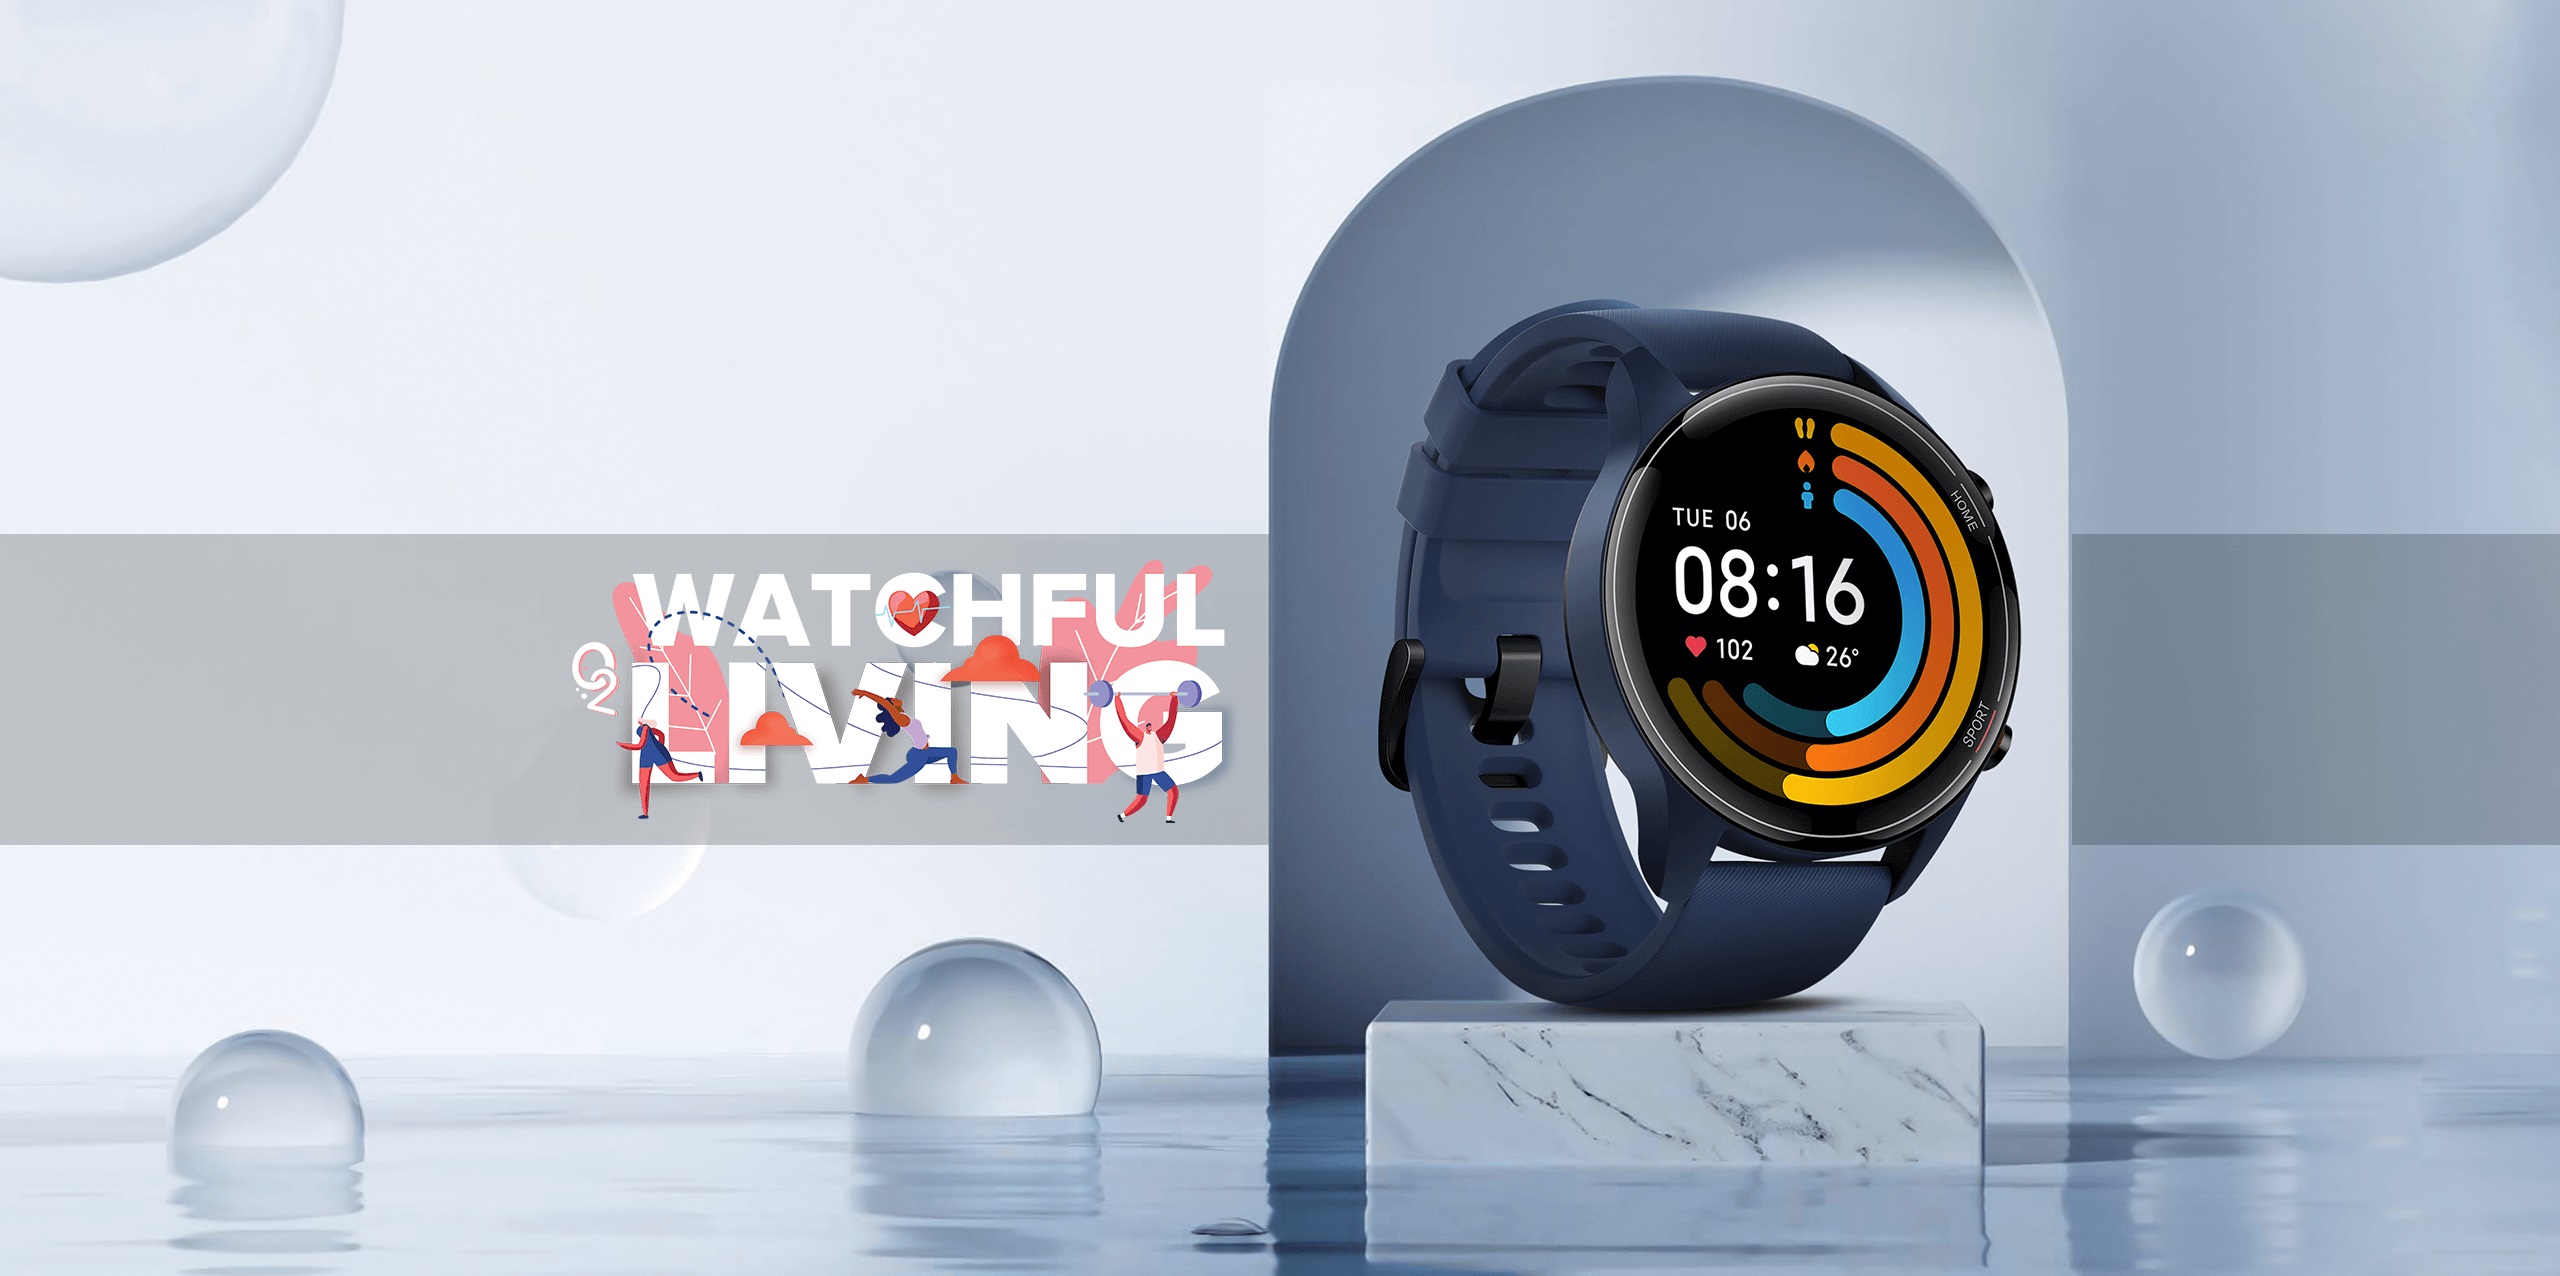 Xiaomi Mi Watch Revolve Active smartwatch